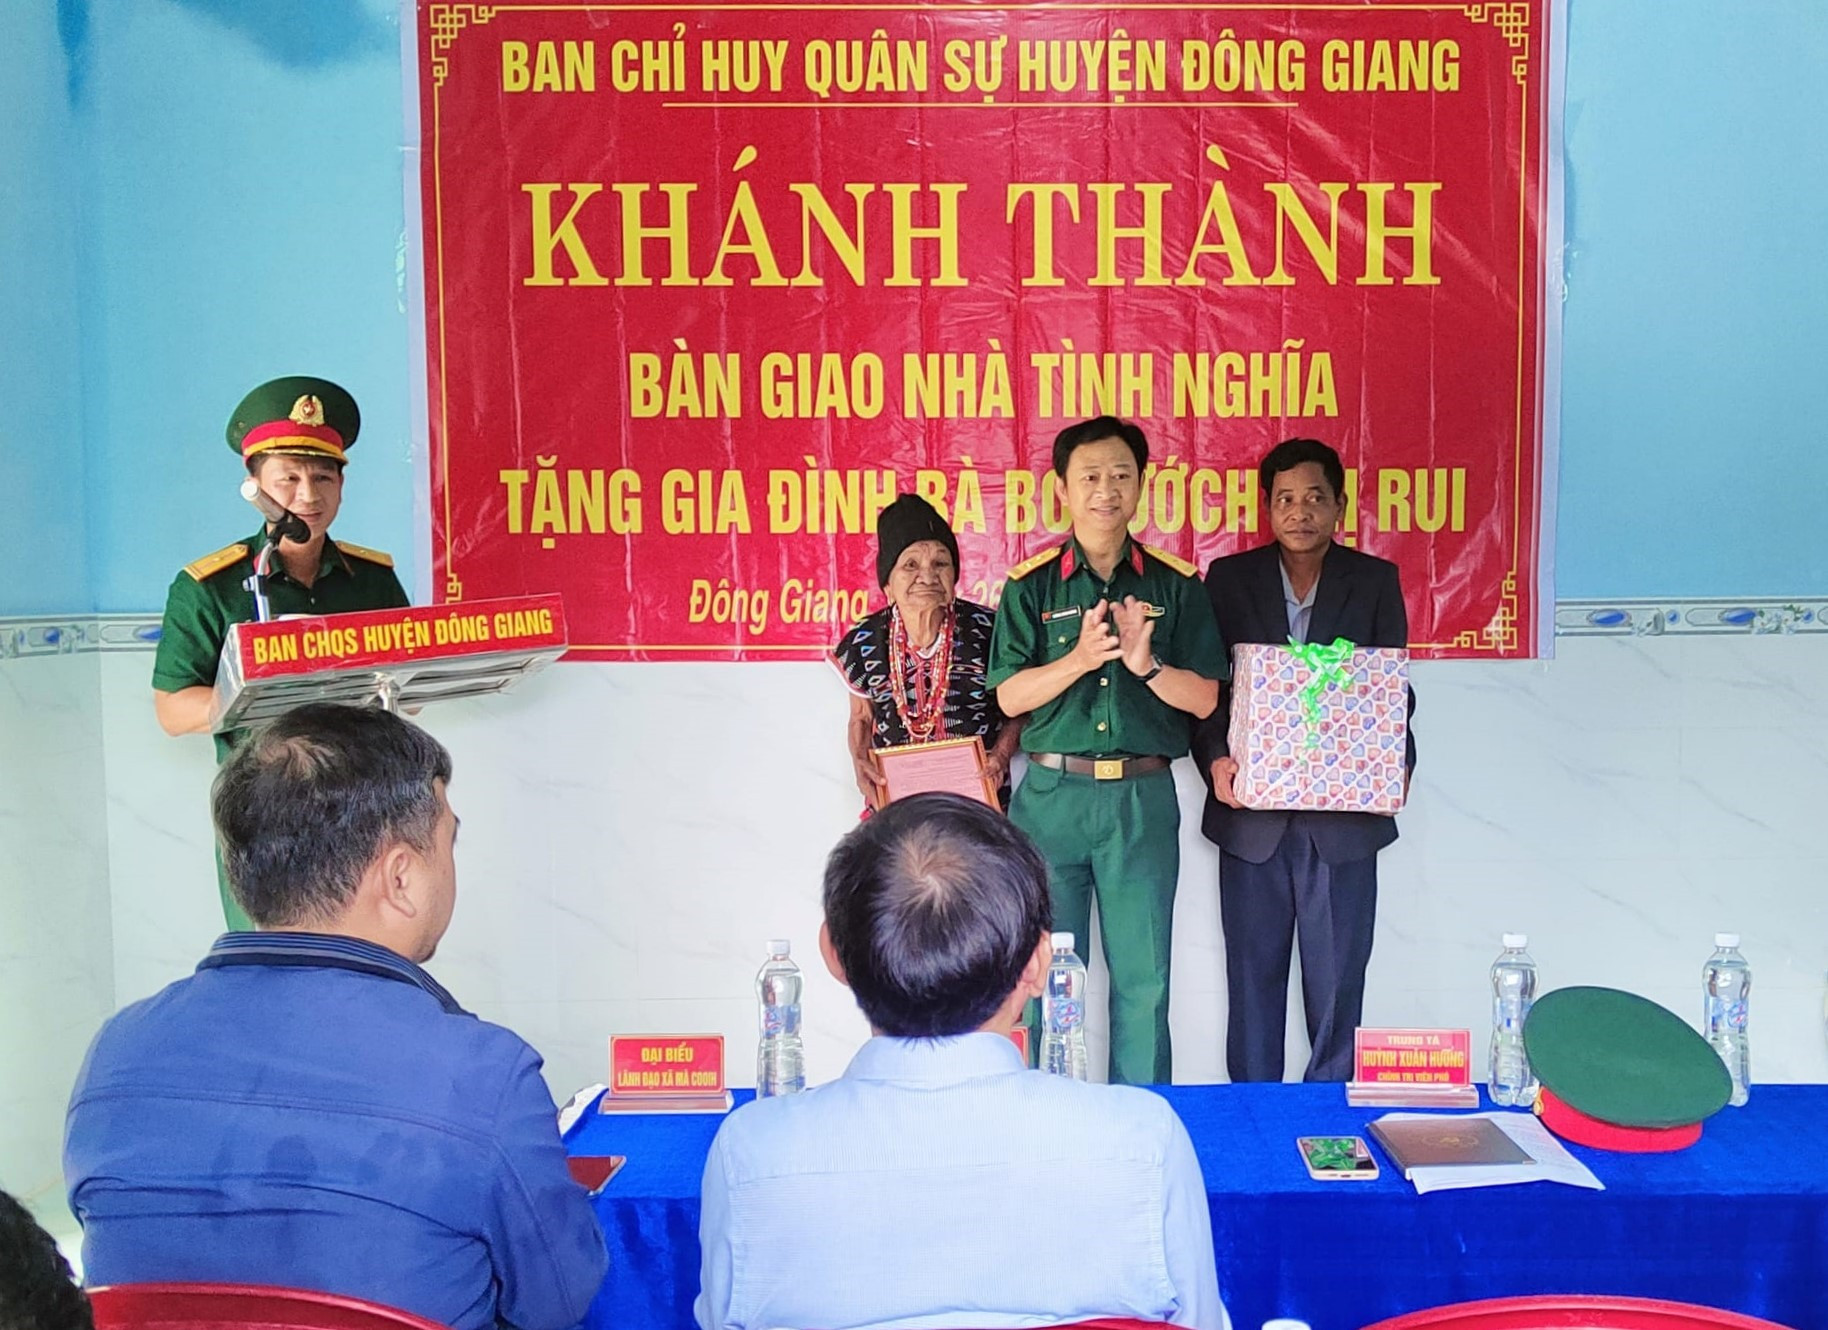 Đại diện Ban Chỉ huy Quân sự huyện Đông Giang tặng quà động viên cho gia đình bà Bh'nướch Thị Rui. Ảnh: V.R